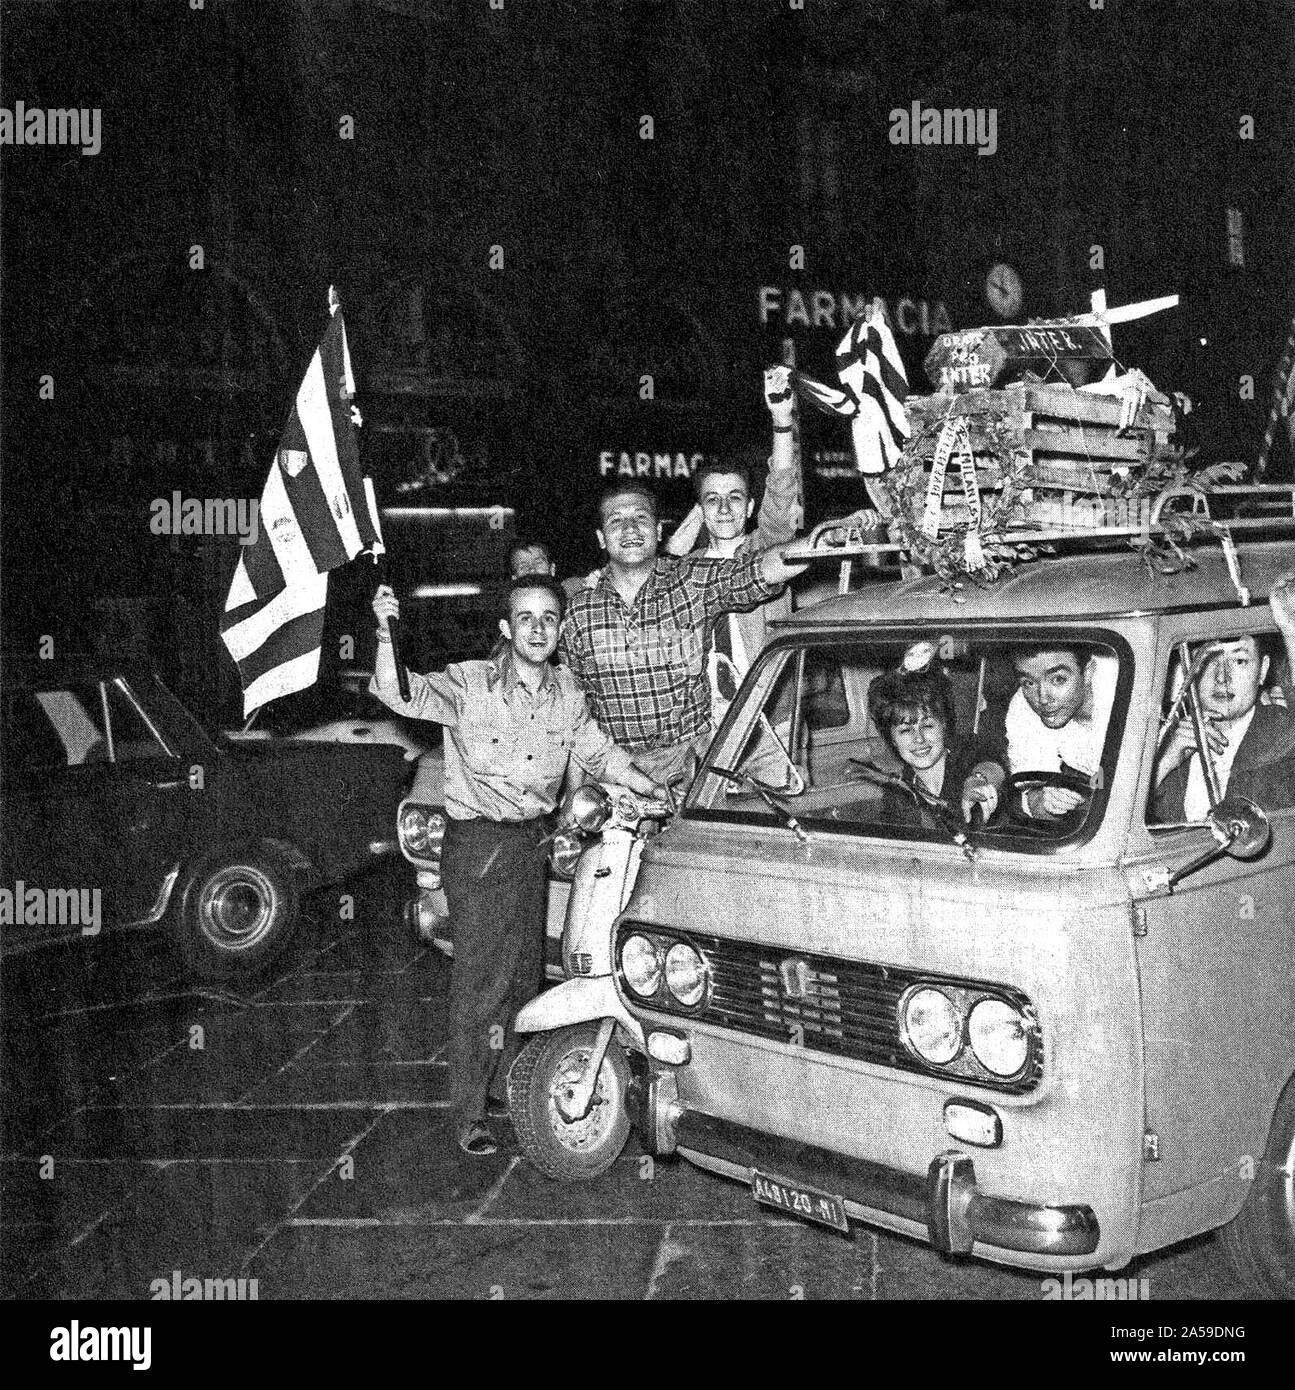 Milan (Italie), 1 juin 1967. Les partisans de la Juventus F.C. milanais célèbre la victoire du championnat italien 1966-67 Serie A avec une moquerie pour les rivaux de l'Inter de Milan, battu par un point après la date décisive sur le dépassement du 34e et dernier tour. Banque D'Images